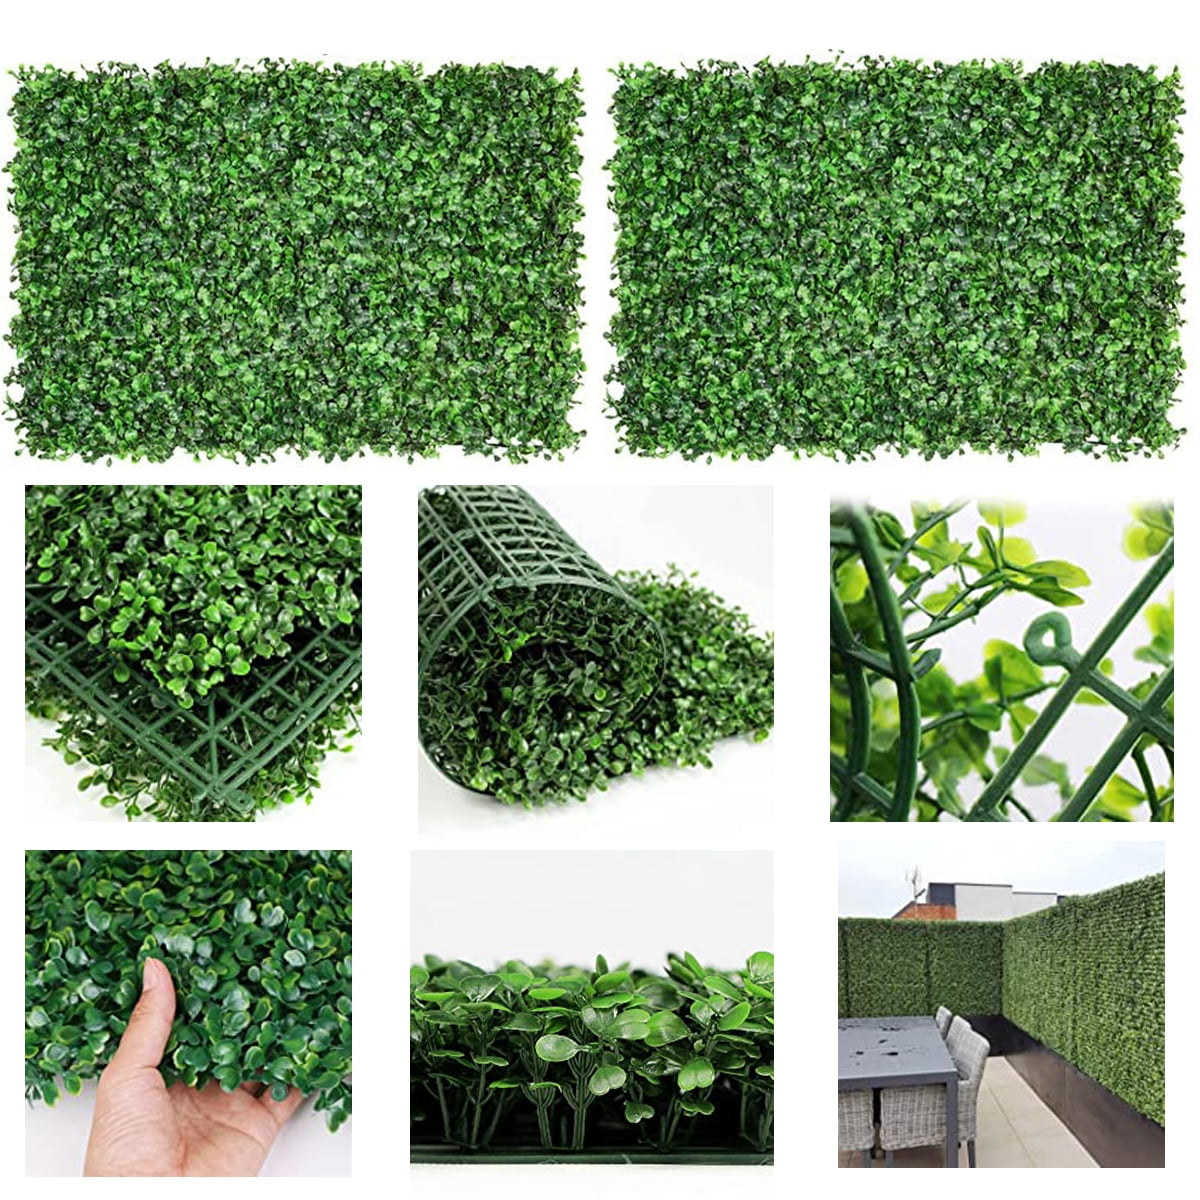 Artificial Lawn 'ELIT' Green Grass Cheap Wiper Best Quality Turf Garden 